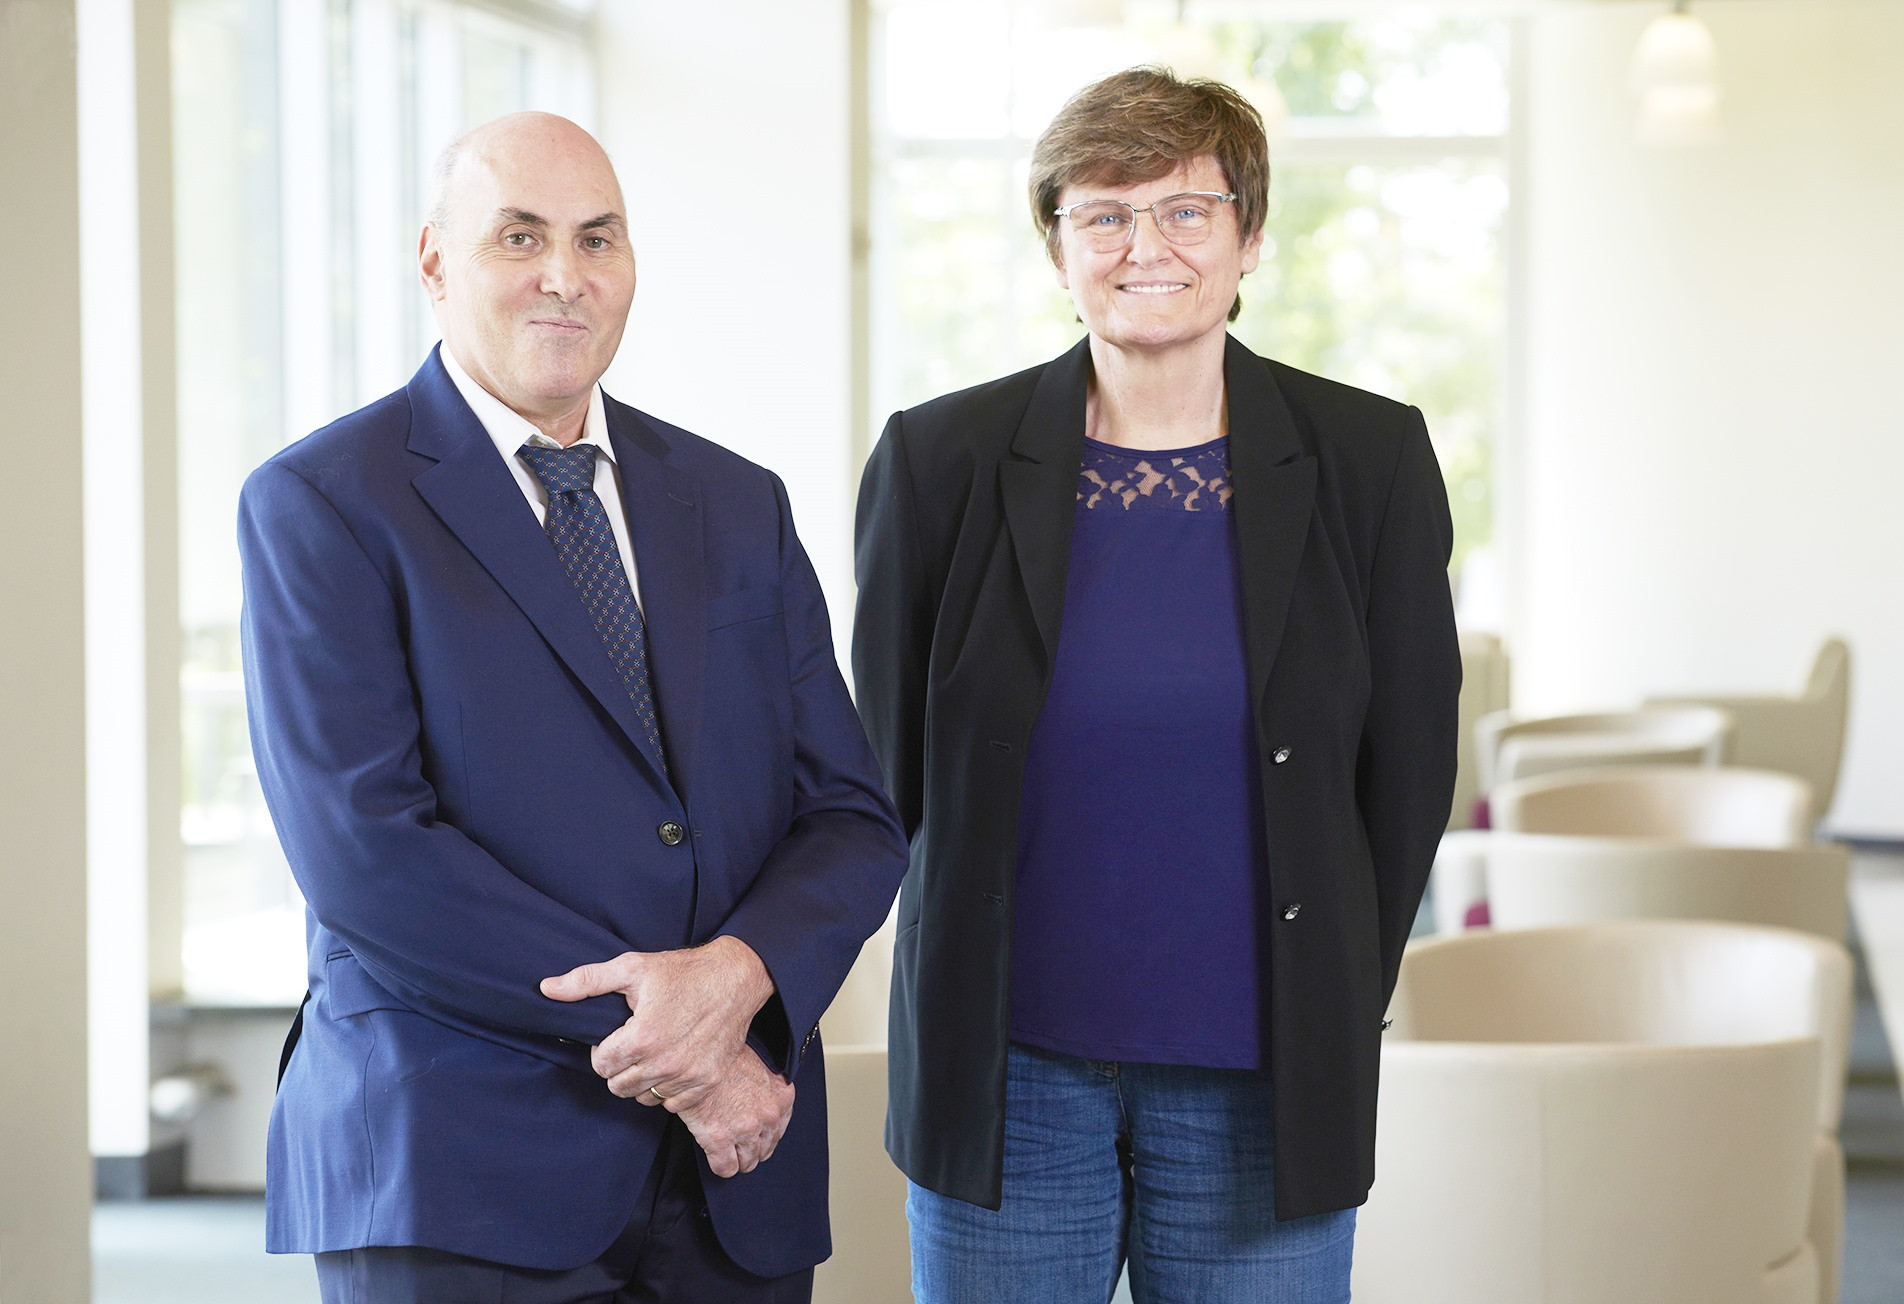 Hai nhà nghiên cứu Drew Weissman (trái) và Katalin Karikó, những chủ nhân của nhiều giải thưởng lớn liên quan đến đột phá trong khoa học đời sống, bao gồm vắc xin Covid-19 mRNA. Ảnh: Penn Medicine